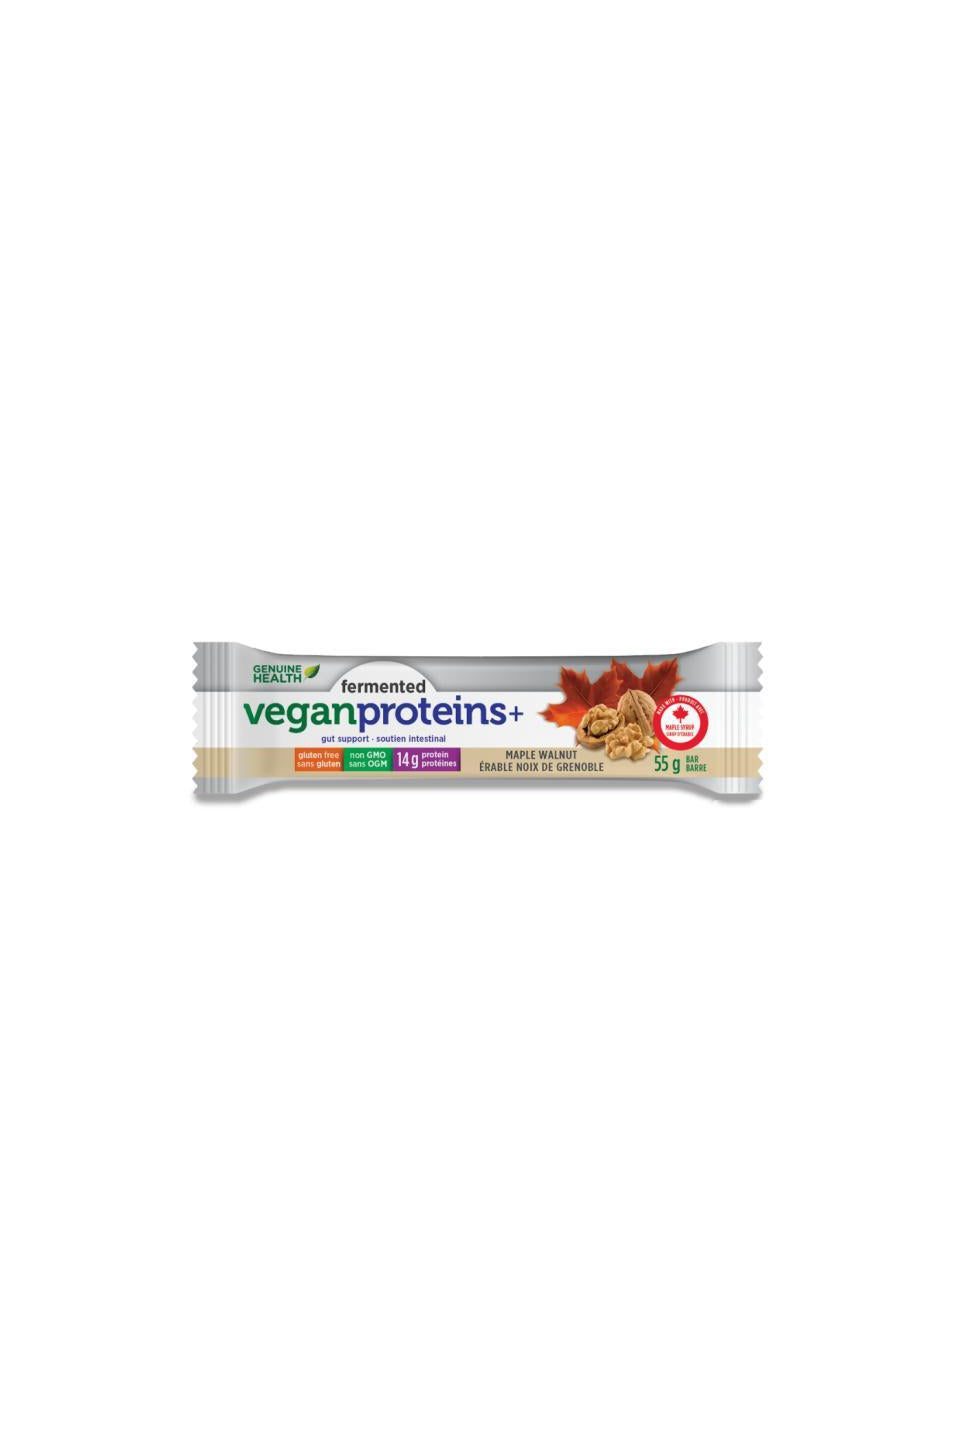 Genuine Health Fermented Vegan Proteins+ Bar Maple Walnut Flavour 55g